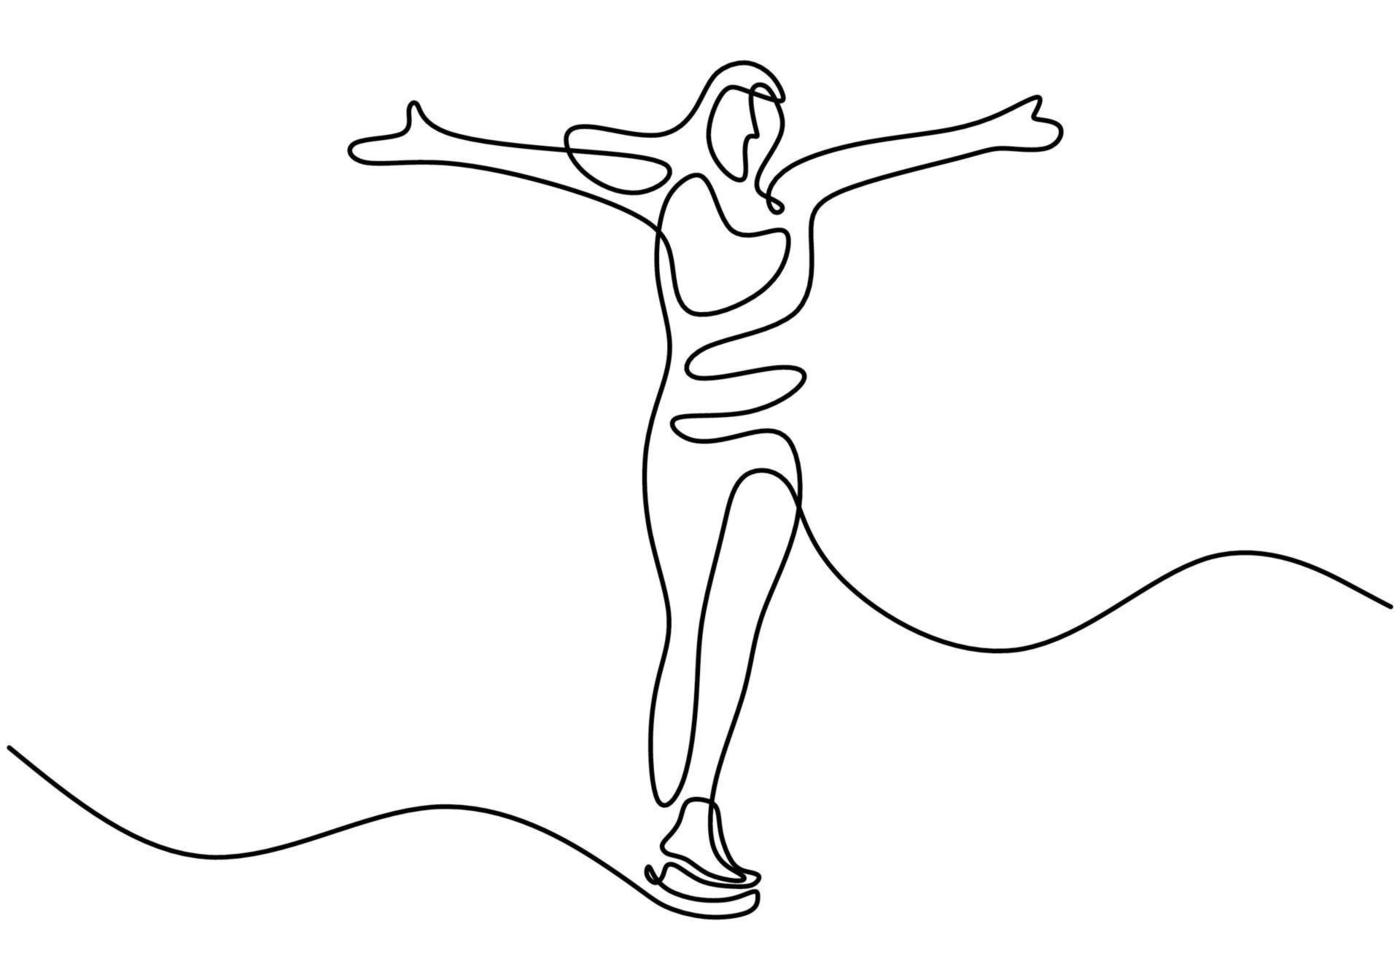 disegno a tratteggio continuo della ragazza che gioca pattinaggio sul ghiaccio nella zona del ghiaccio isolata su priorità bassa bianca. pattinaggio di figura ragazza disegnata a mano lineart minimalismo design. illustrazione di attività invernale vettoriale